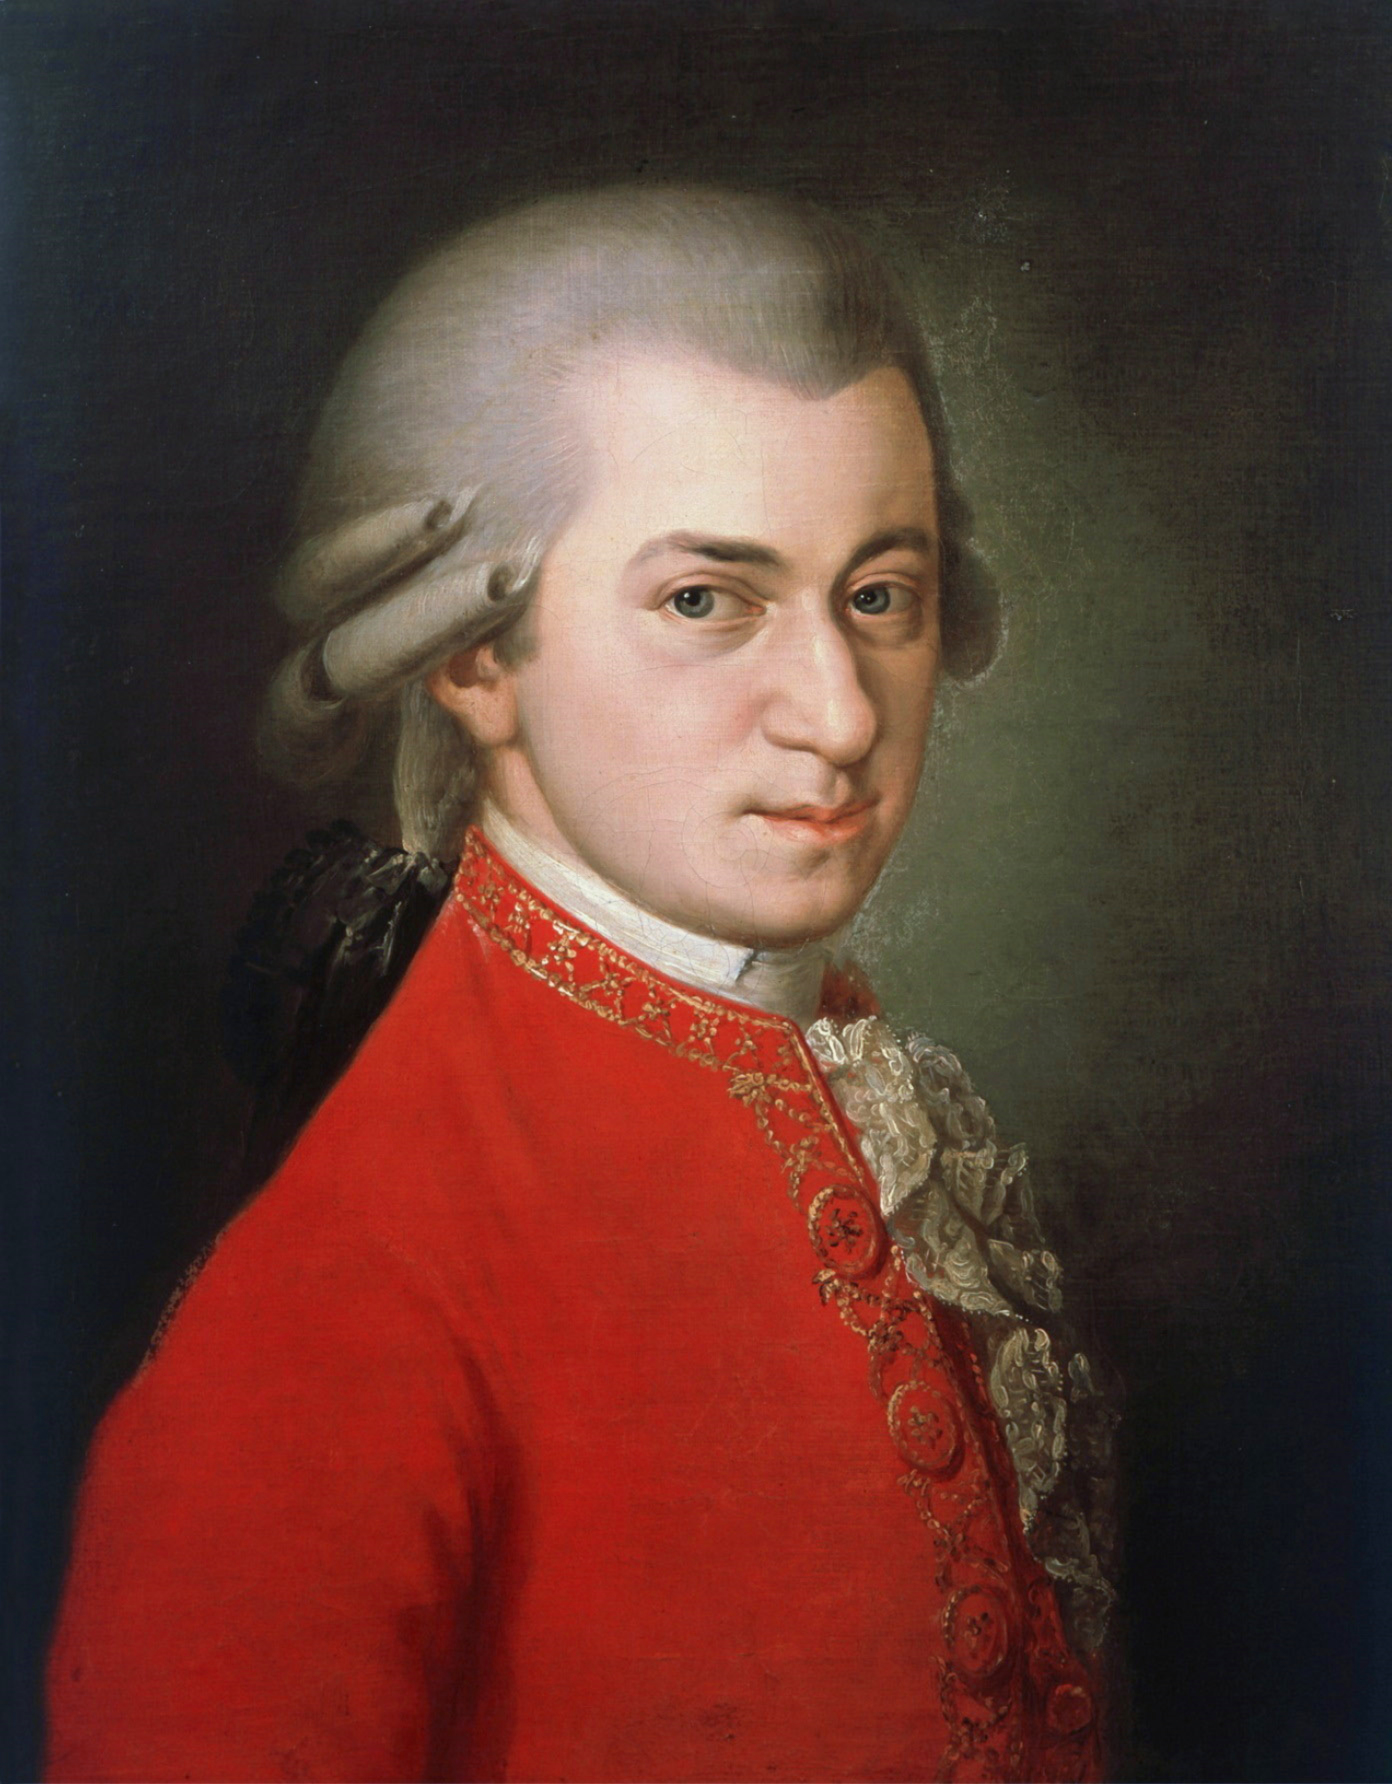 Mozart ese grandioso genio de Salzburgo